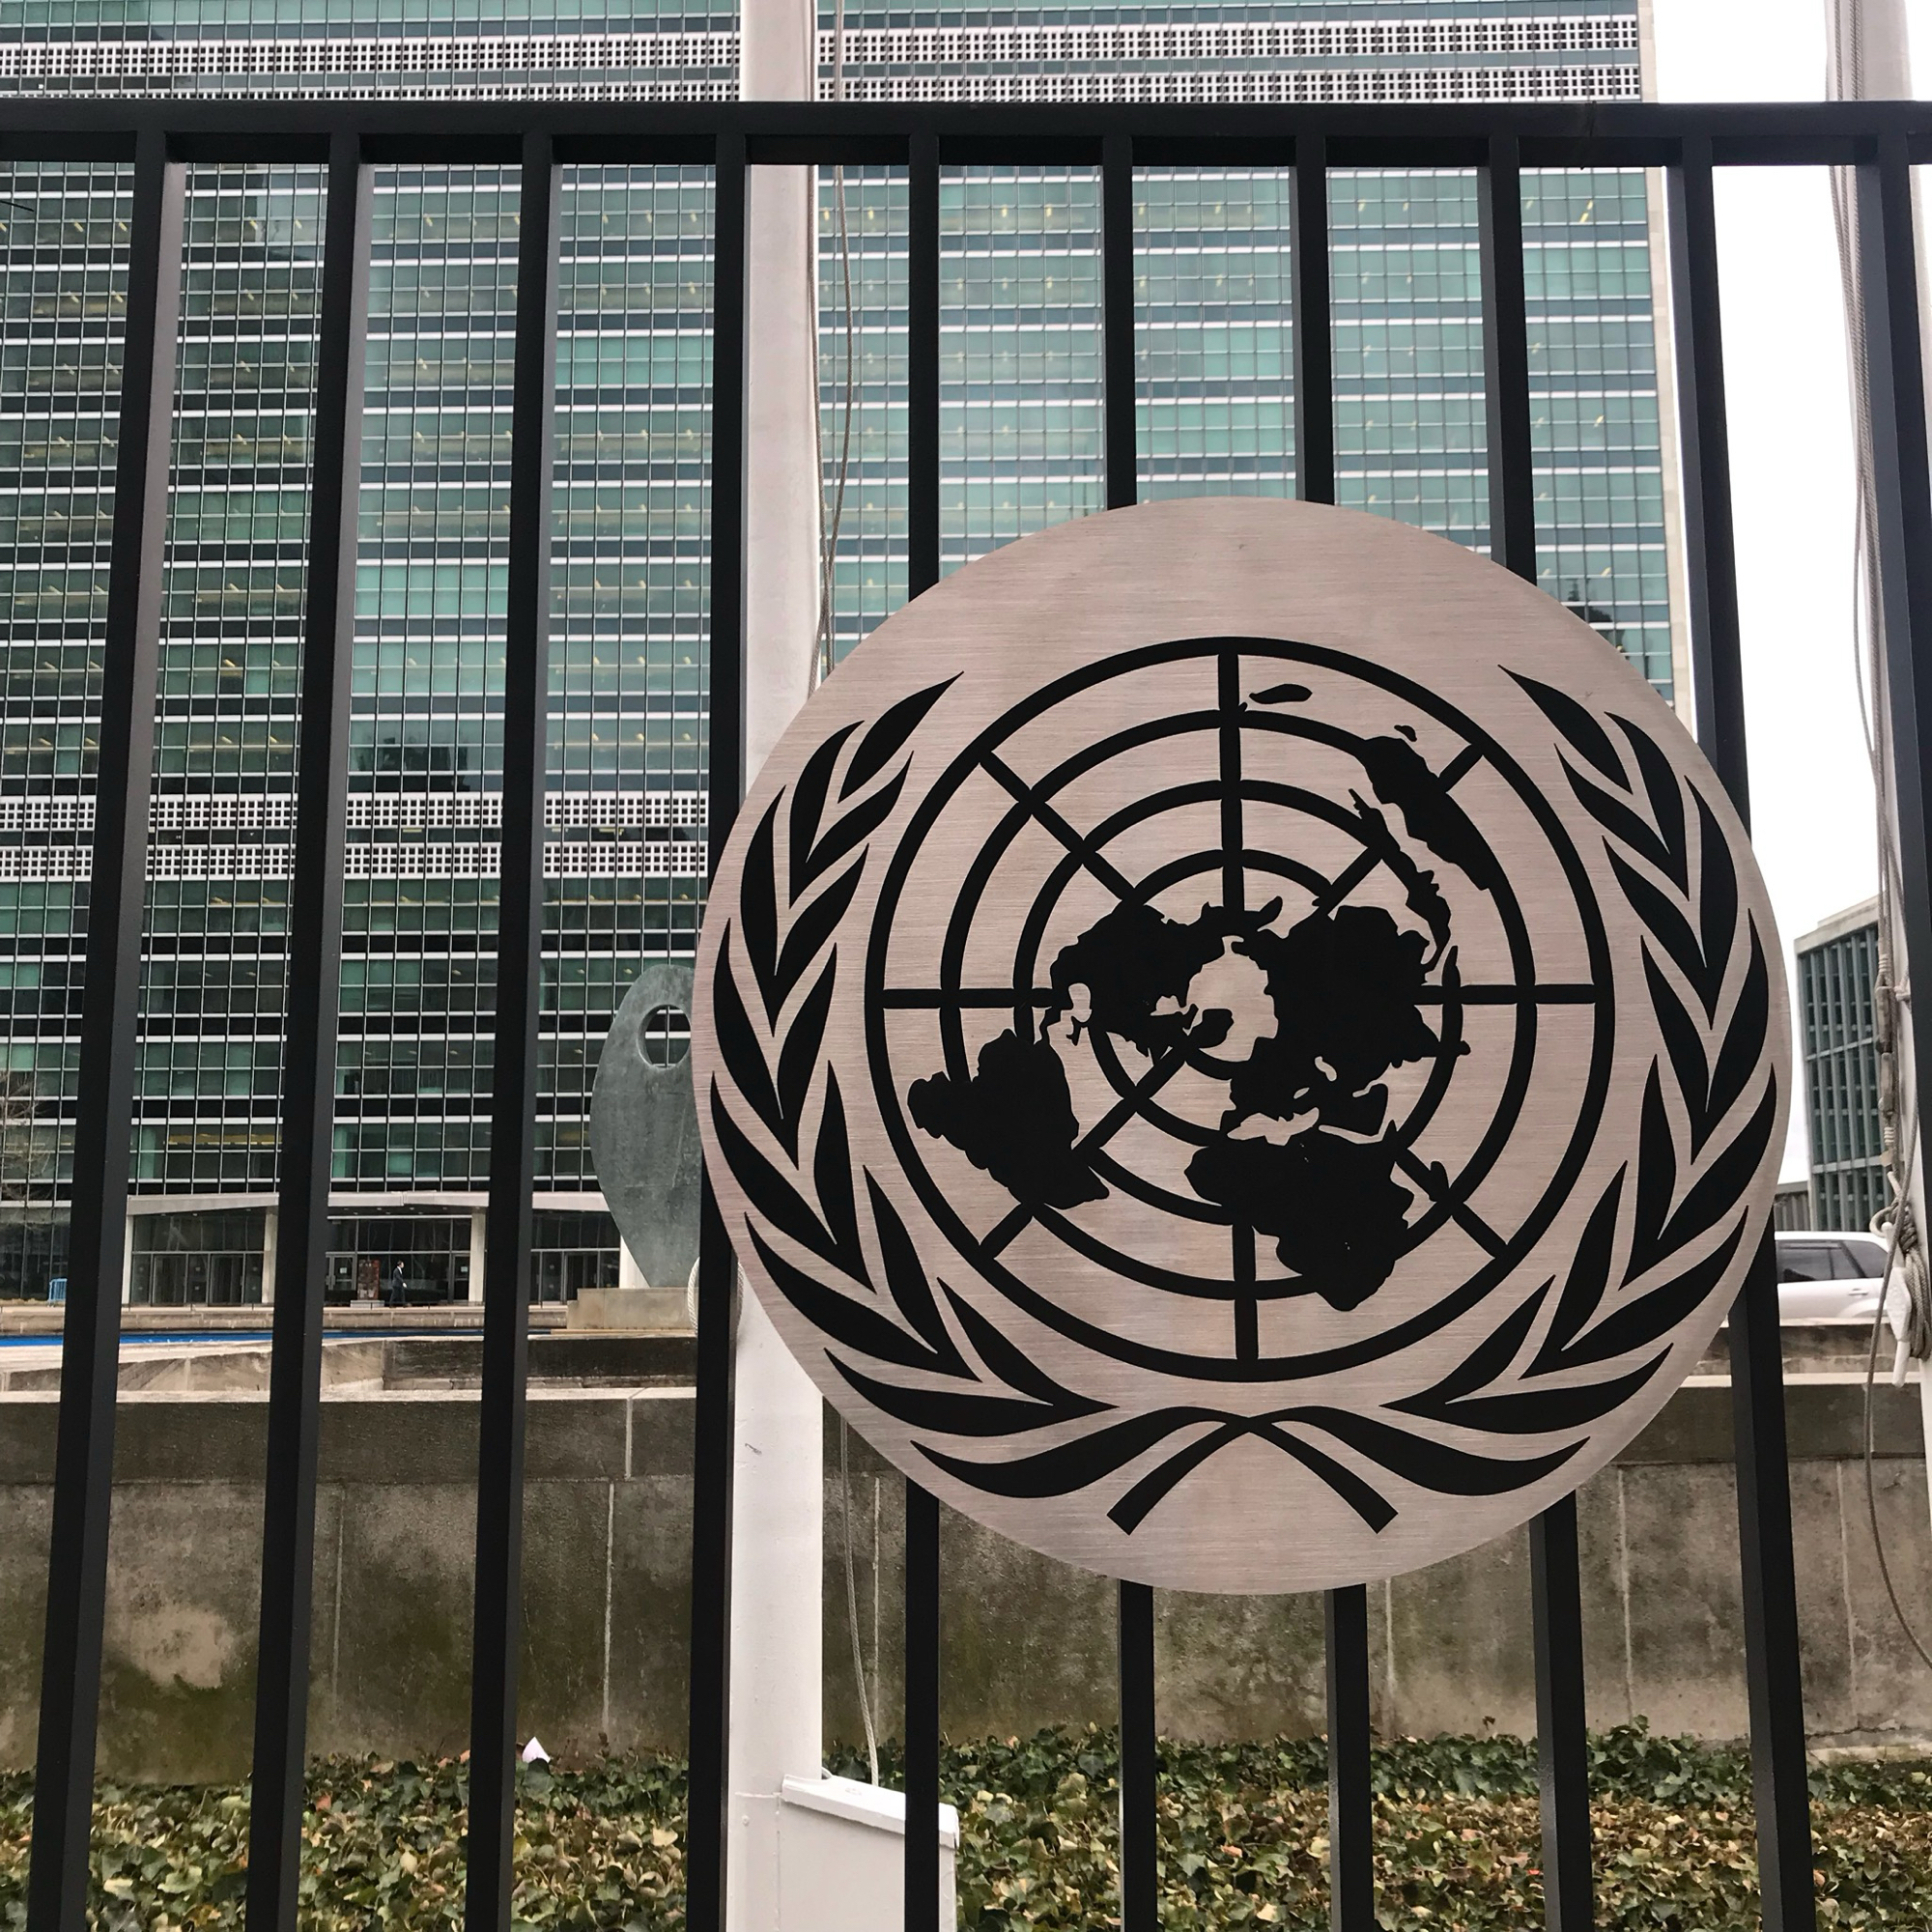 纽约联合国总部